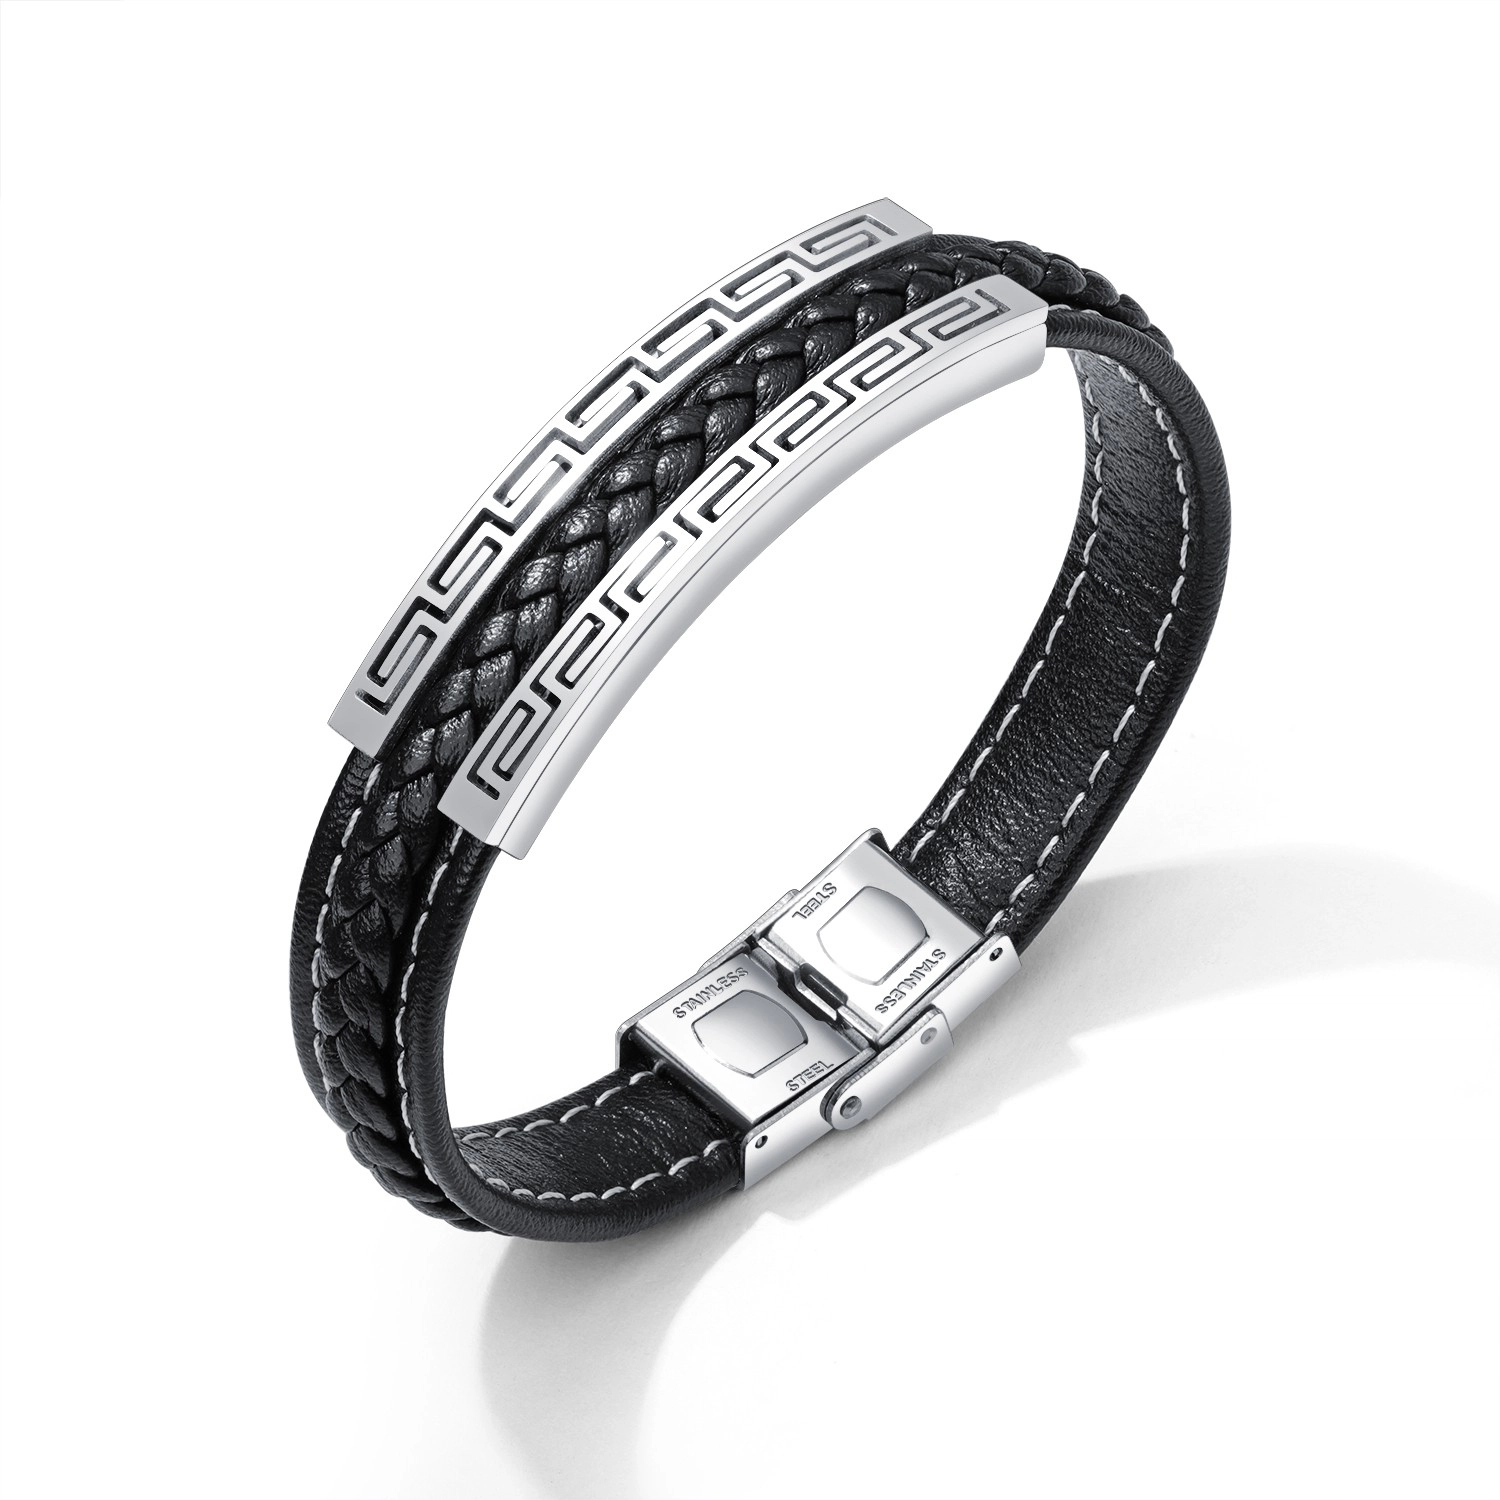 E-shop Šperky Eshop - Čierny koženkový náramok, oceľová známka striebornej farby - grécky kľúč SP79.10